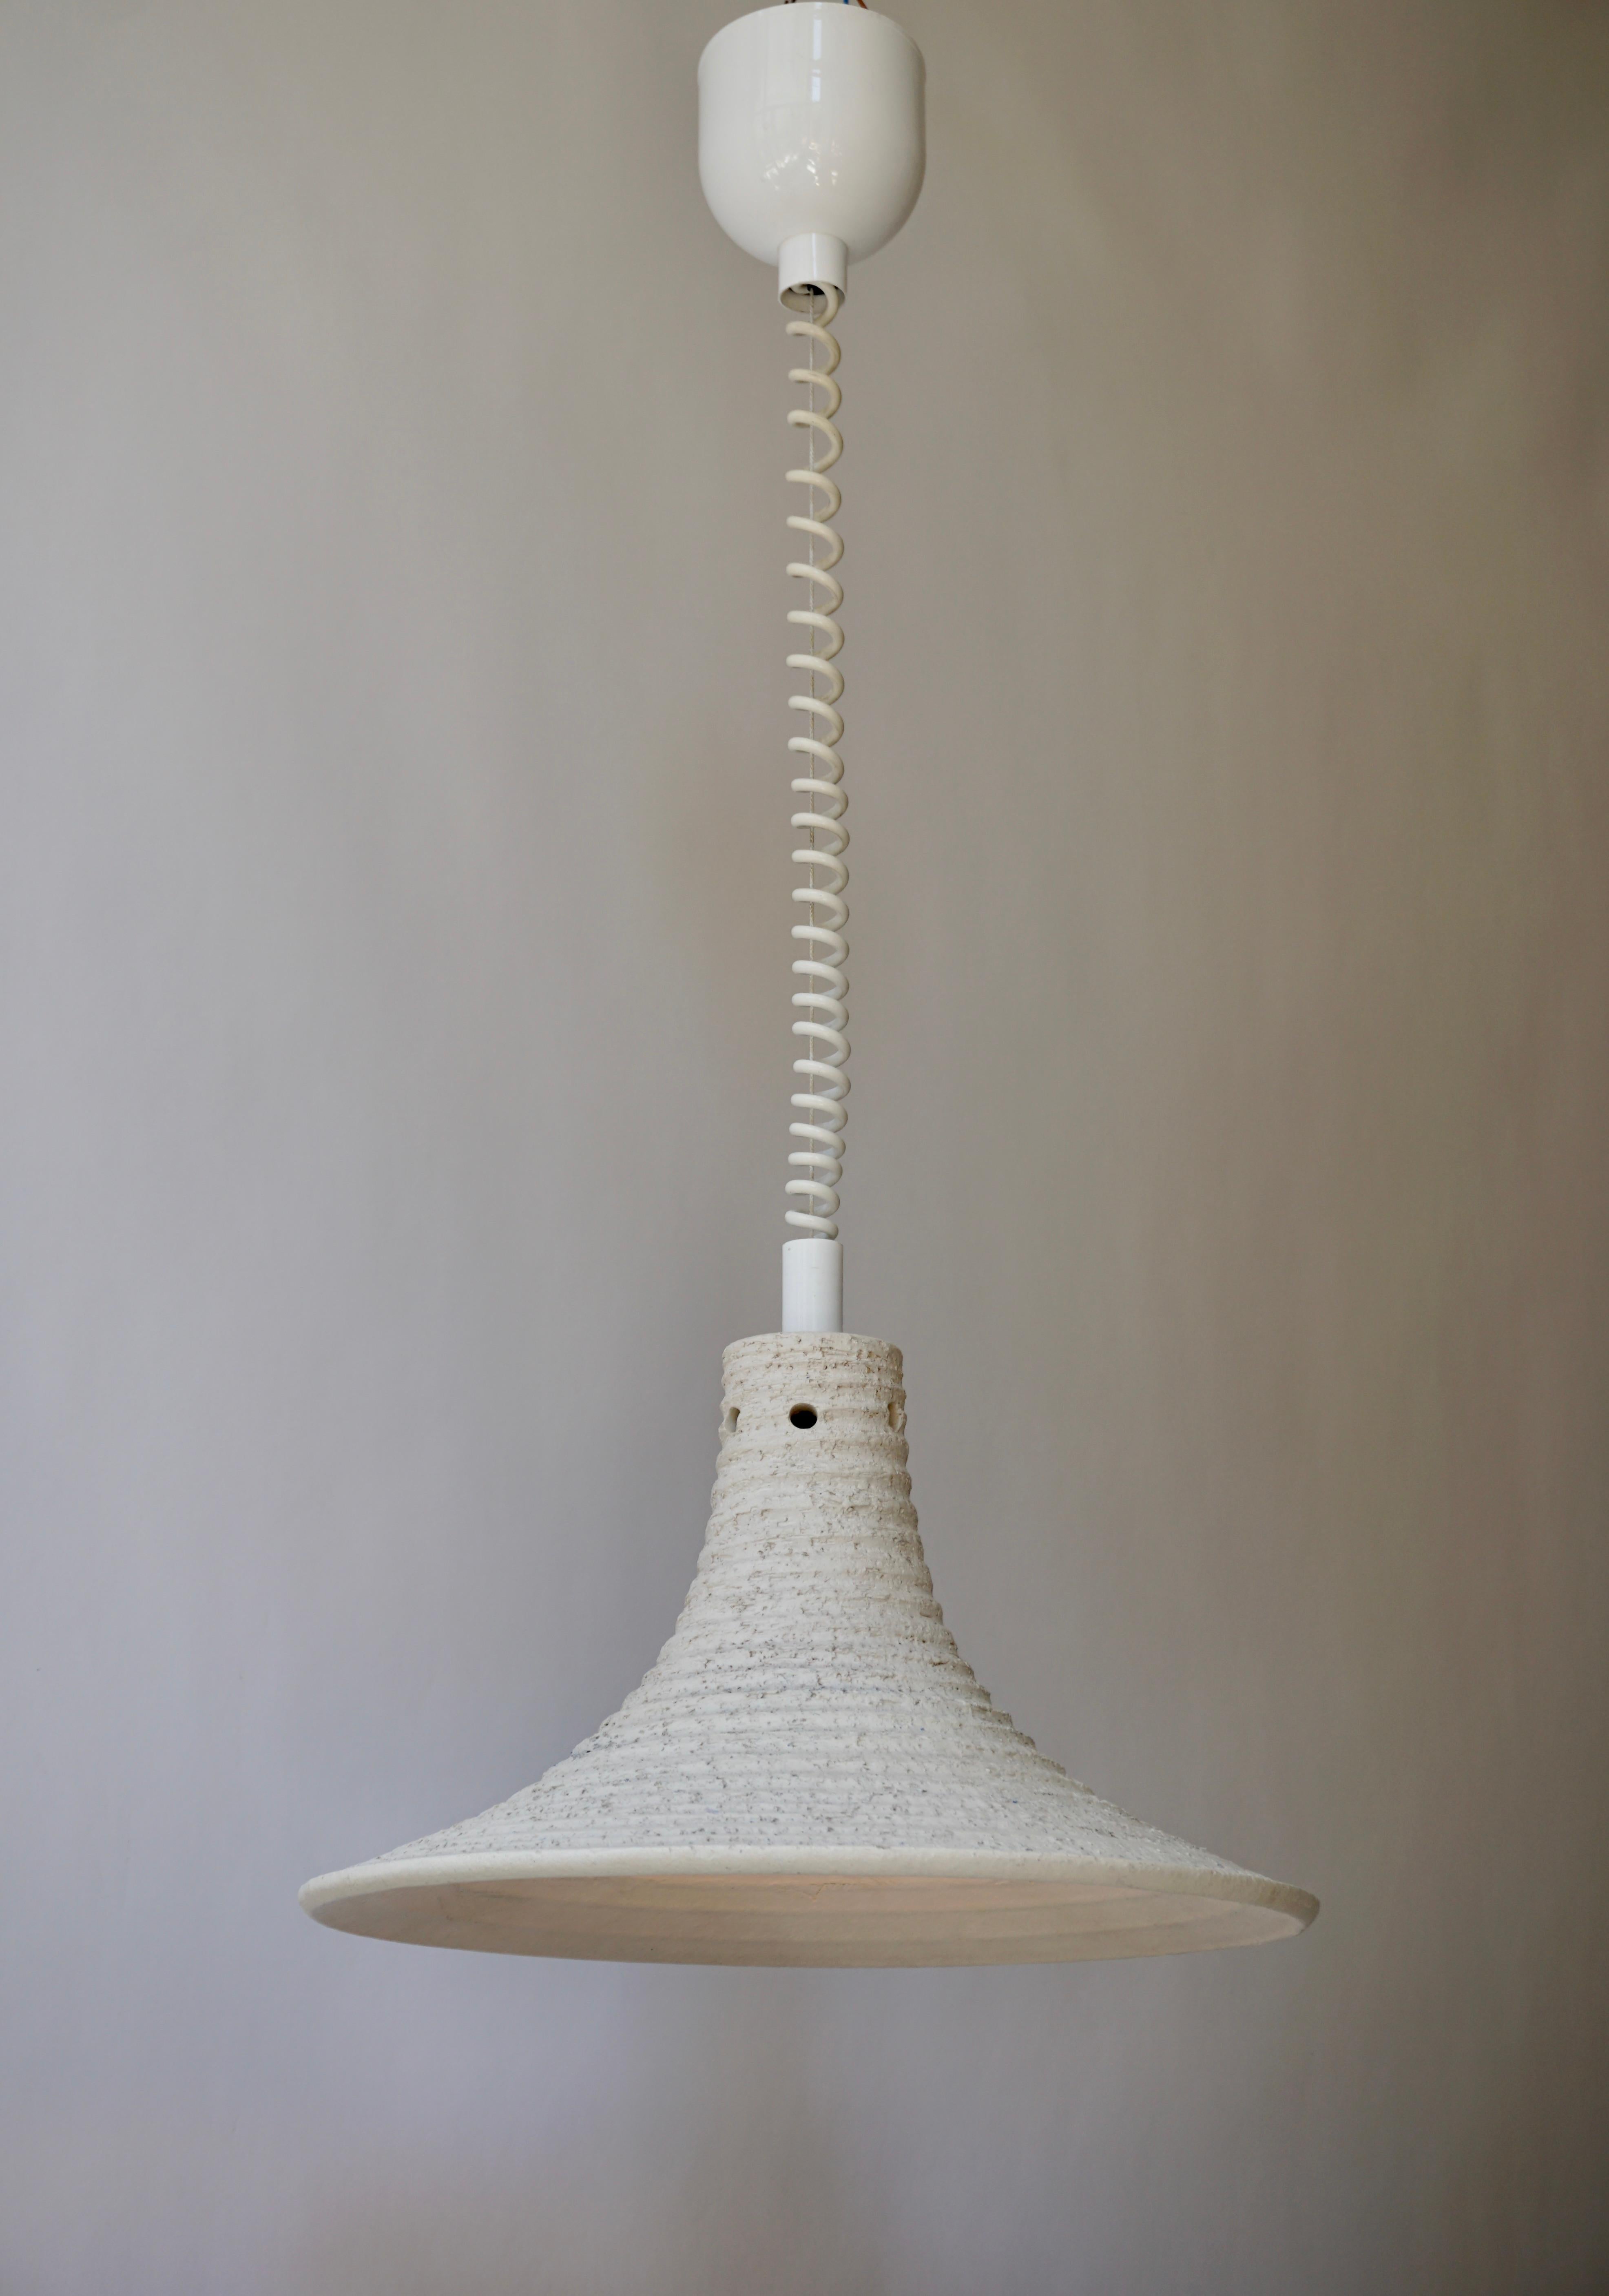 Lampe pendante réglable en céramique blanche, Italie années 1950.
Diamètre 41 cm. Fixation en hauteur 23 cm.
Hauteur minimale de 70 cm.
Hauteur maximale de 120 cm.